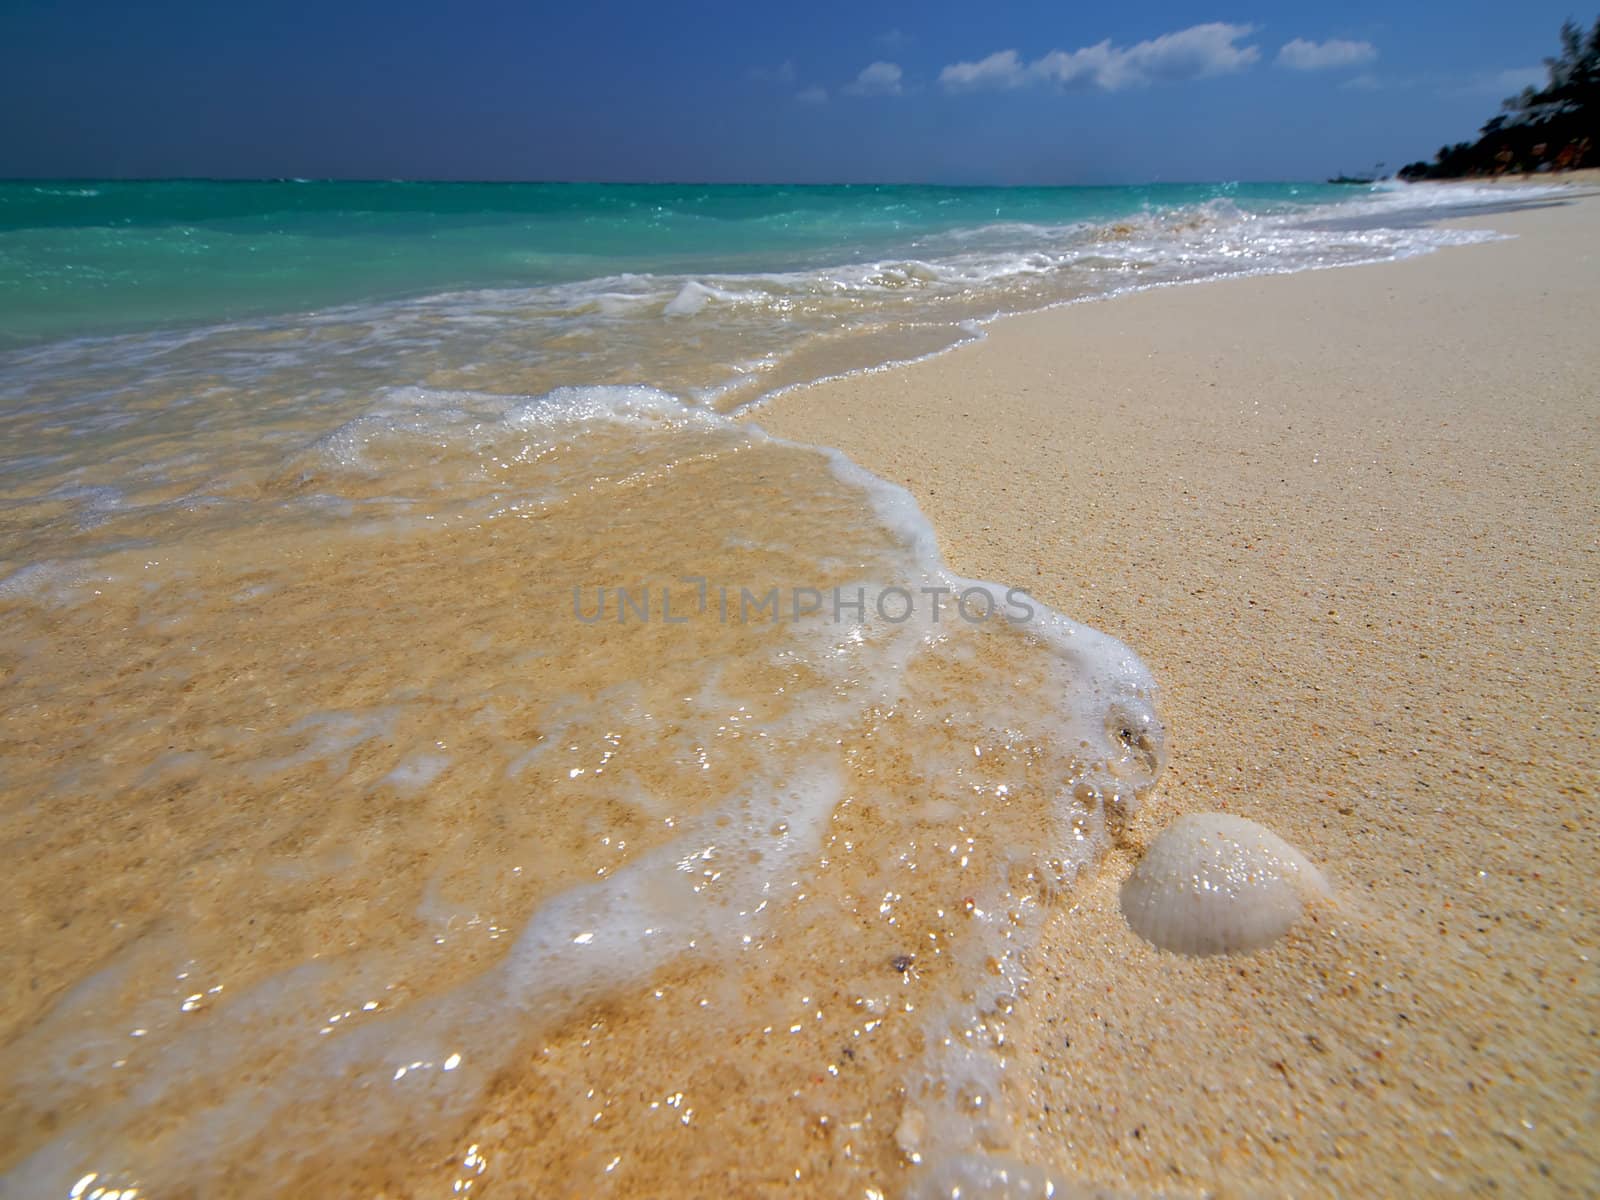 Shell on a tropical beach by liseykina